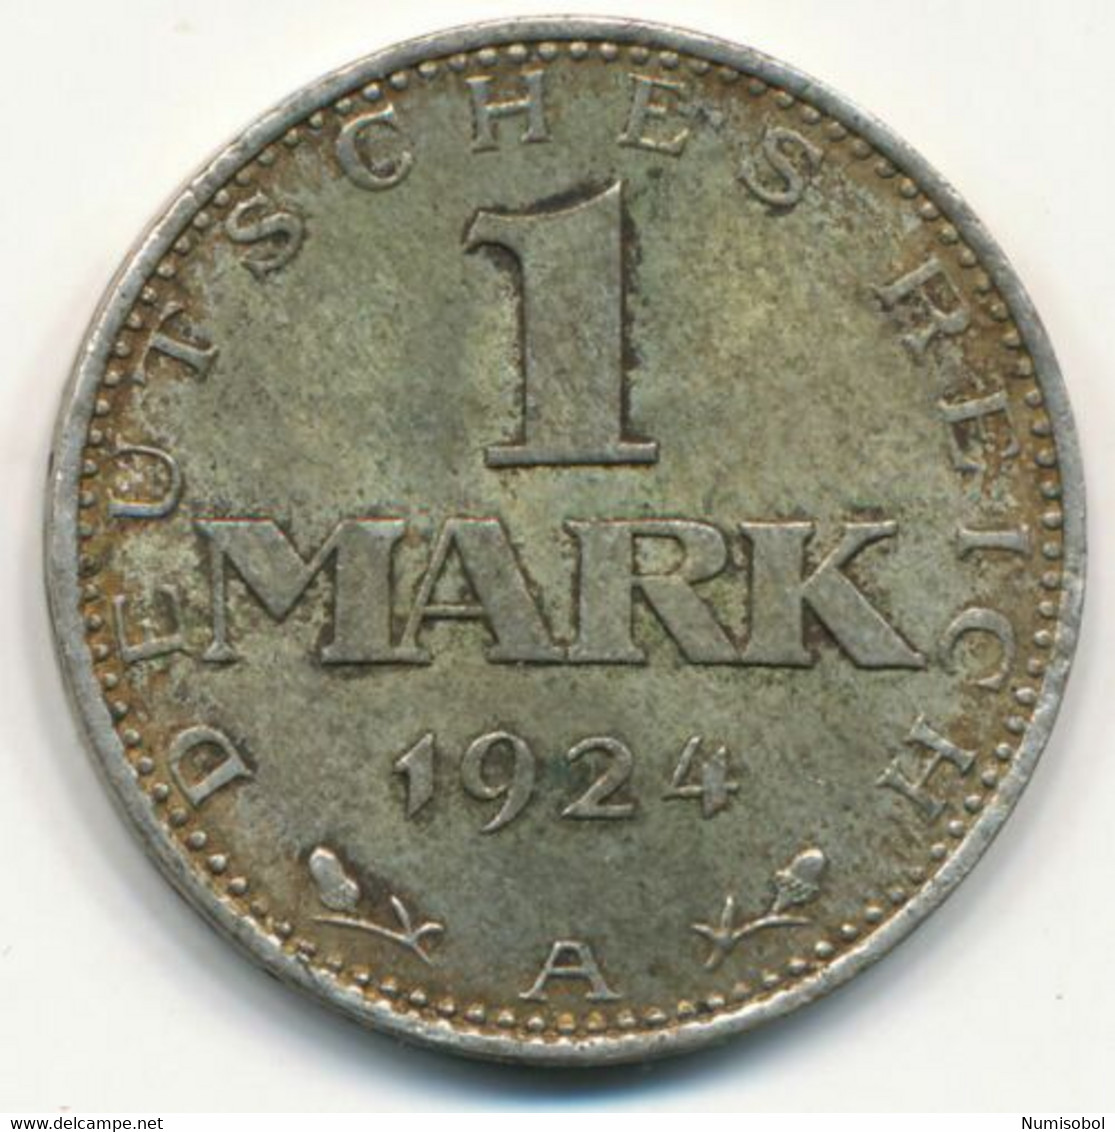 GERMANY, DEUTSCHLAND - 1 Mark (A) 1924. (D244) - 1 Marco & 1 Reichsmark